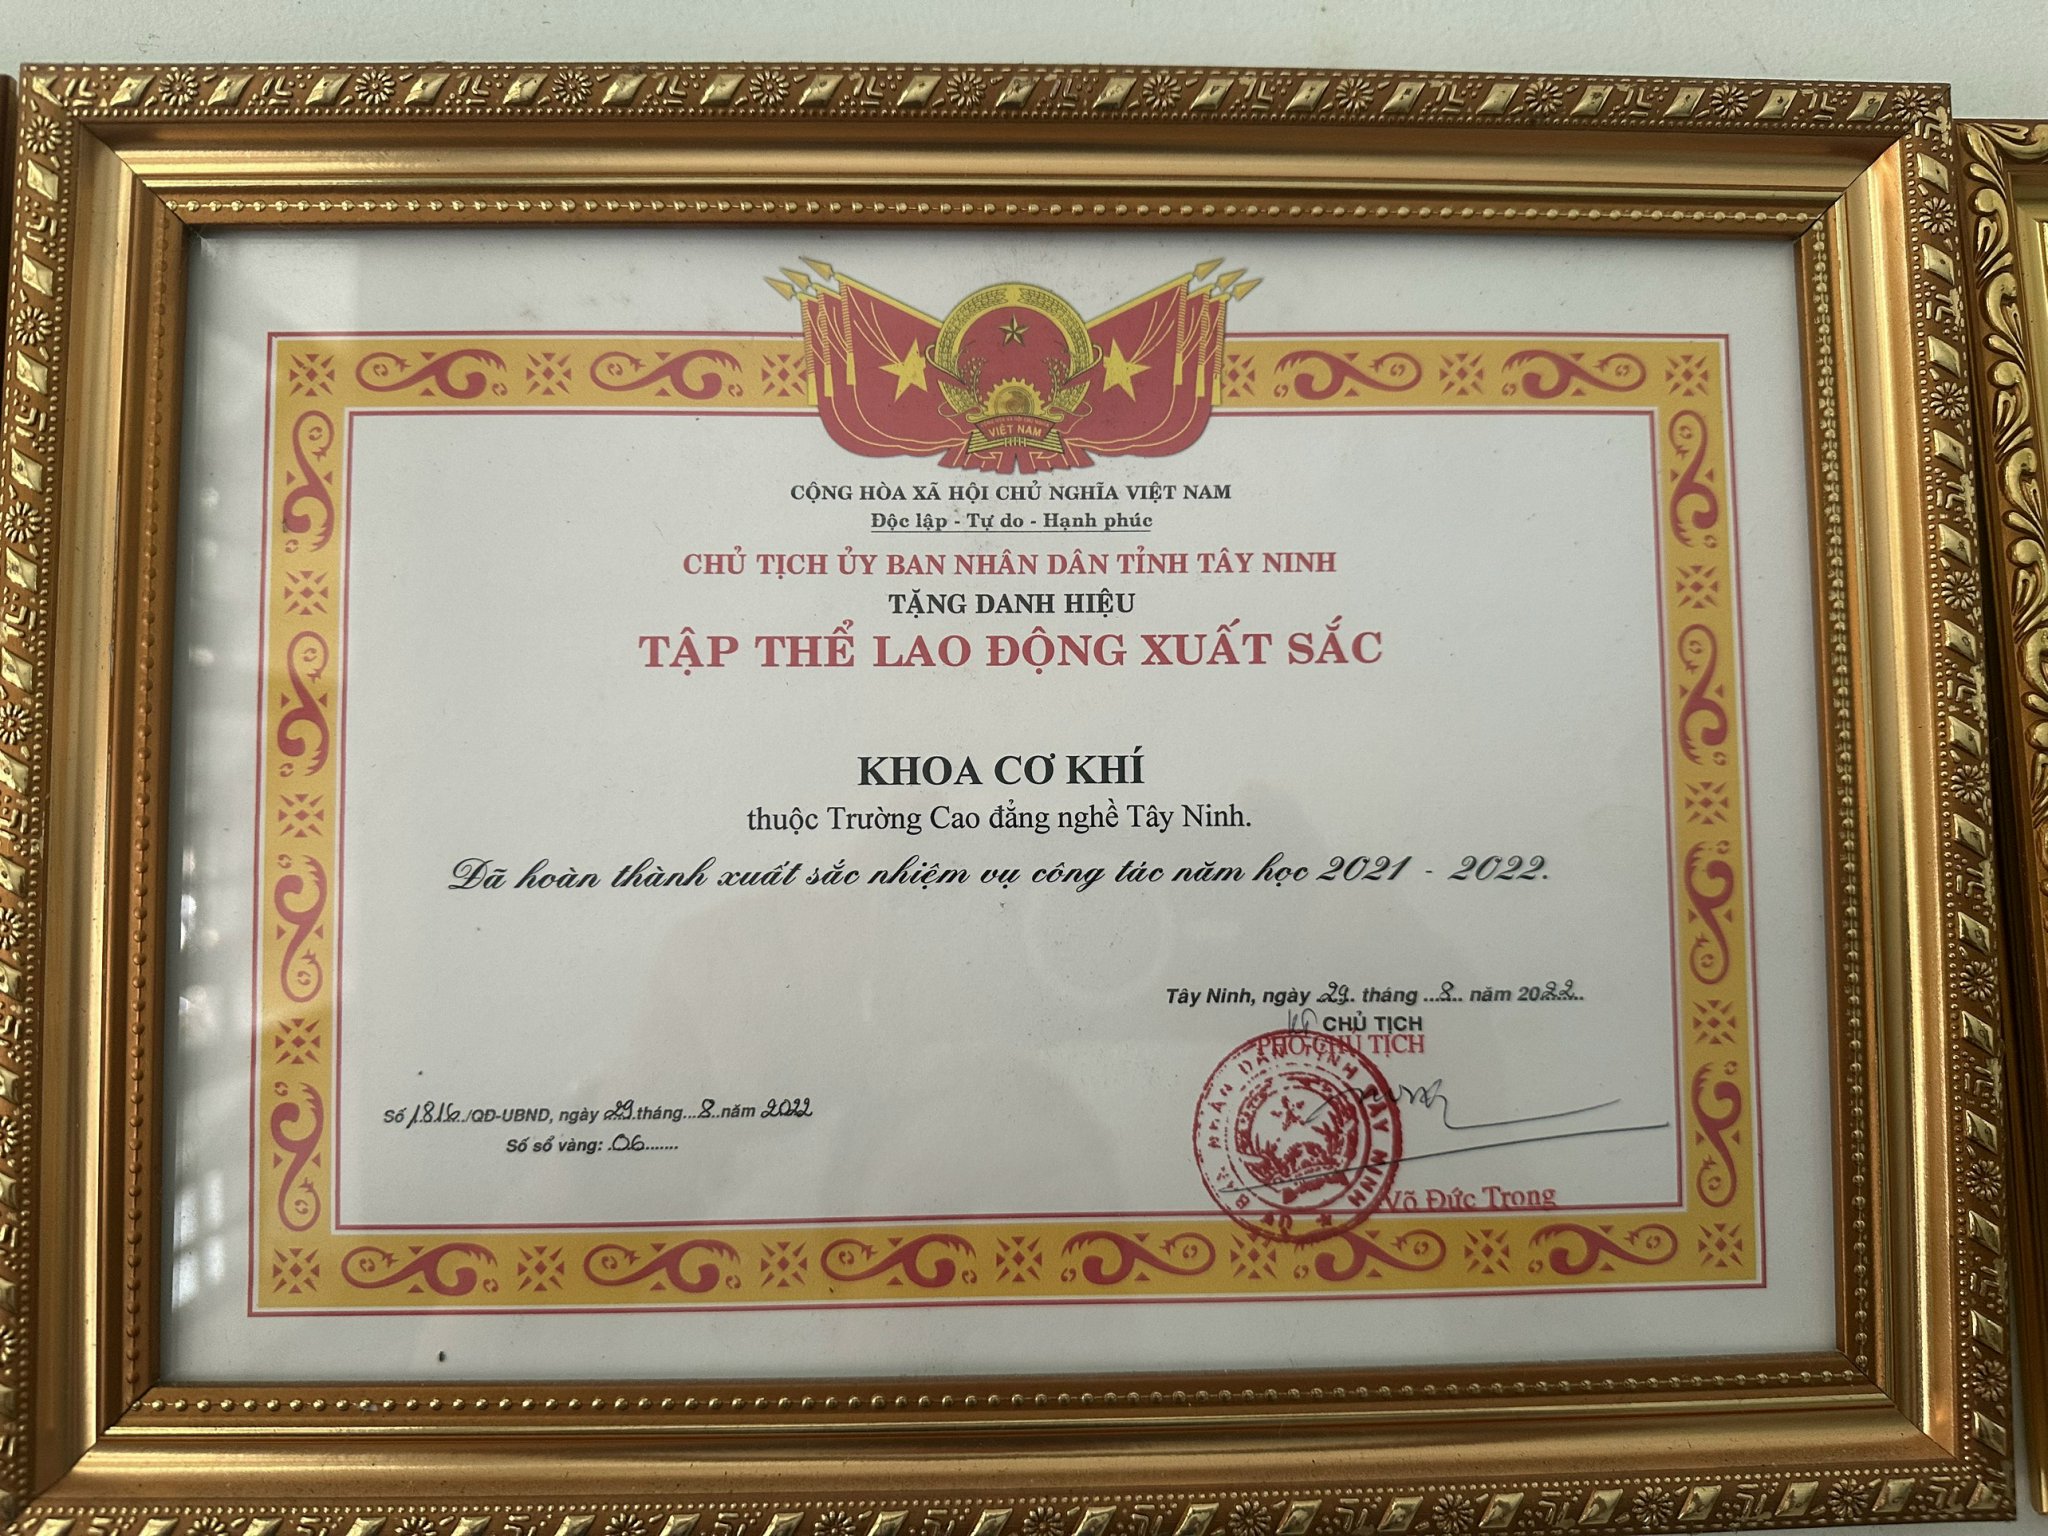 Khoa Cơ khí Trường Cao đẳng nghề Tây Ninh nhận Danh hiệu Tập thể lao động xuất sắc năm học 2021-2022 của Chủ tịch UBND tỉnh Tây Ninh